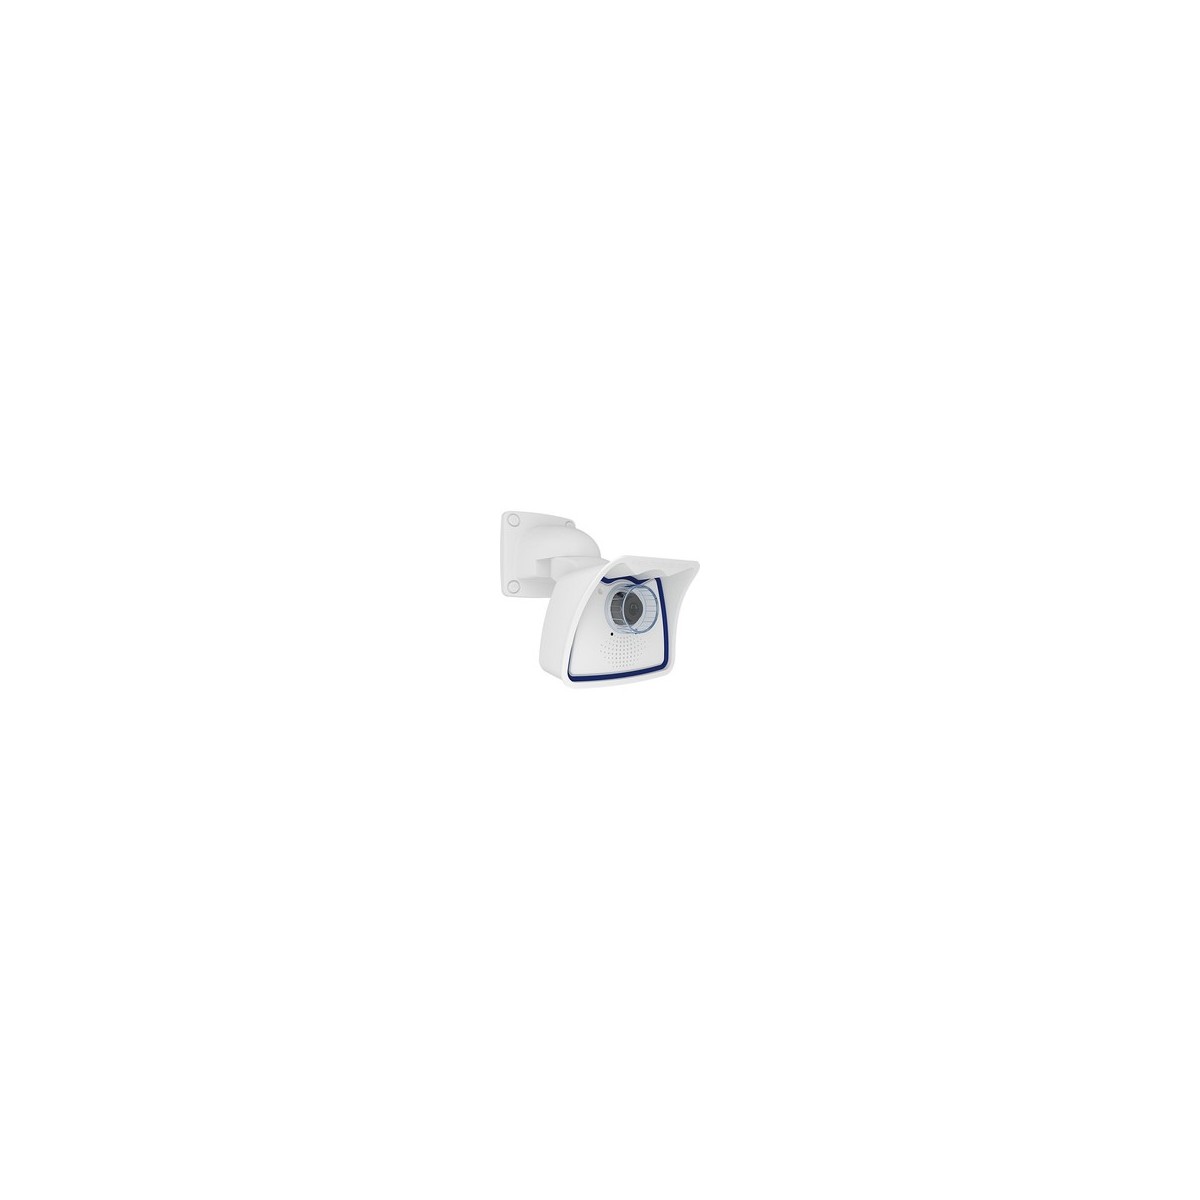 Mobotix Mx-M26B-6D061 - IP security camera - Indoor  outdoor - Wired - EN55032: 2012 EN55022: 2010 EN55024: 2010 EN50121-4: 2015